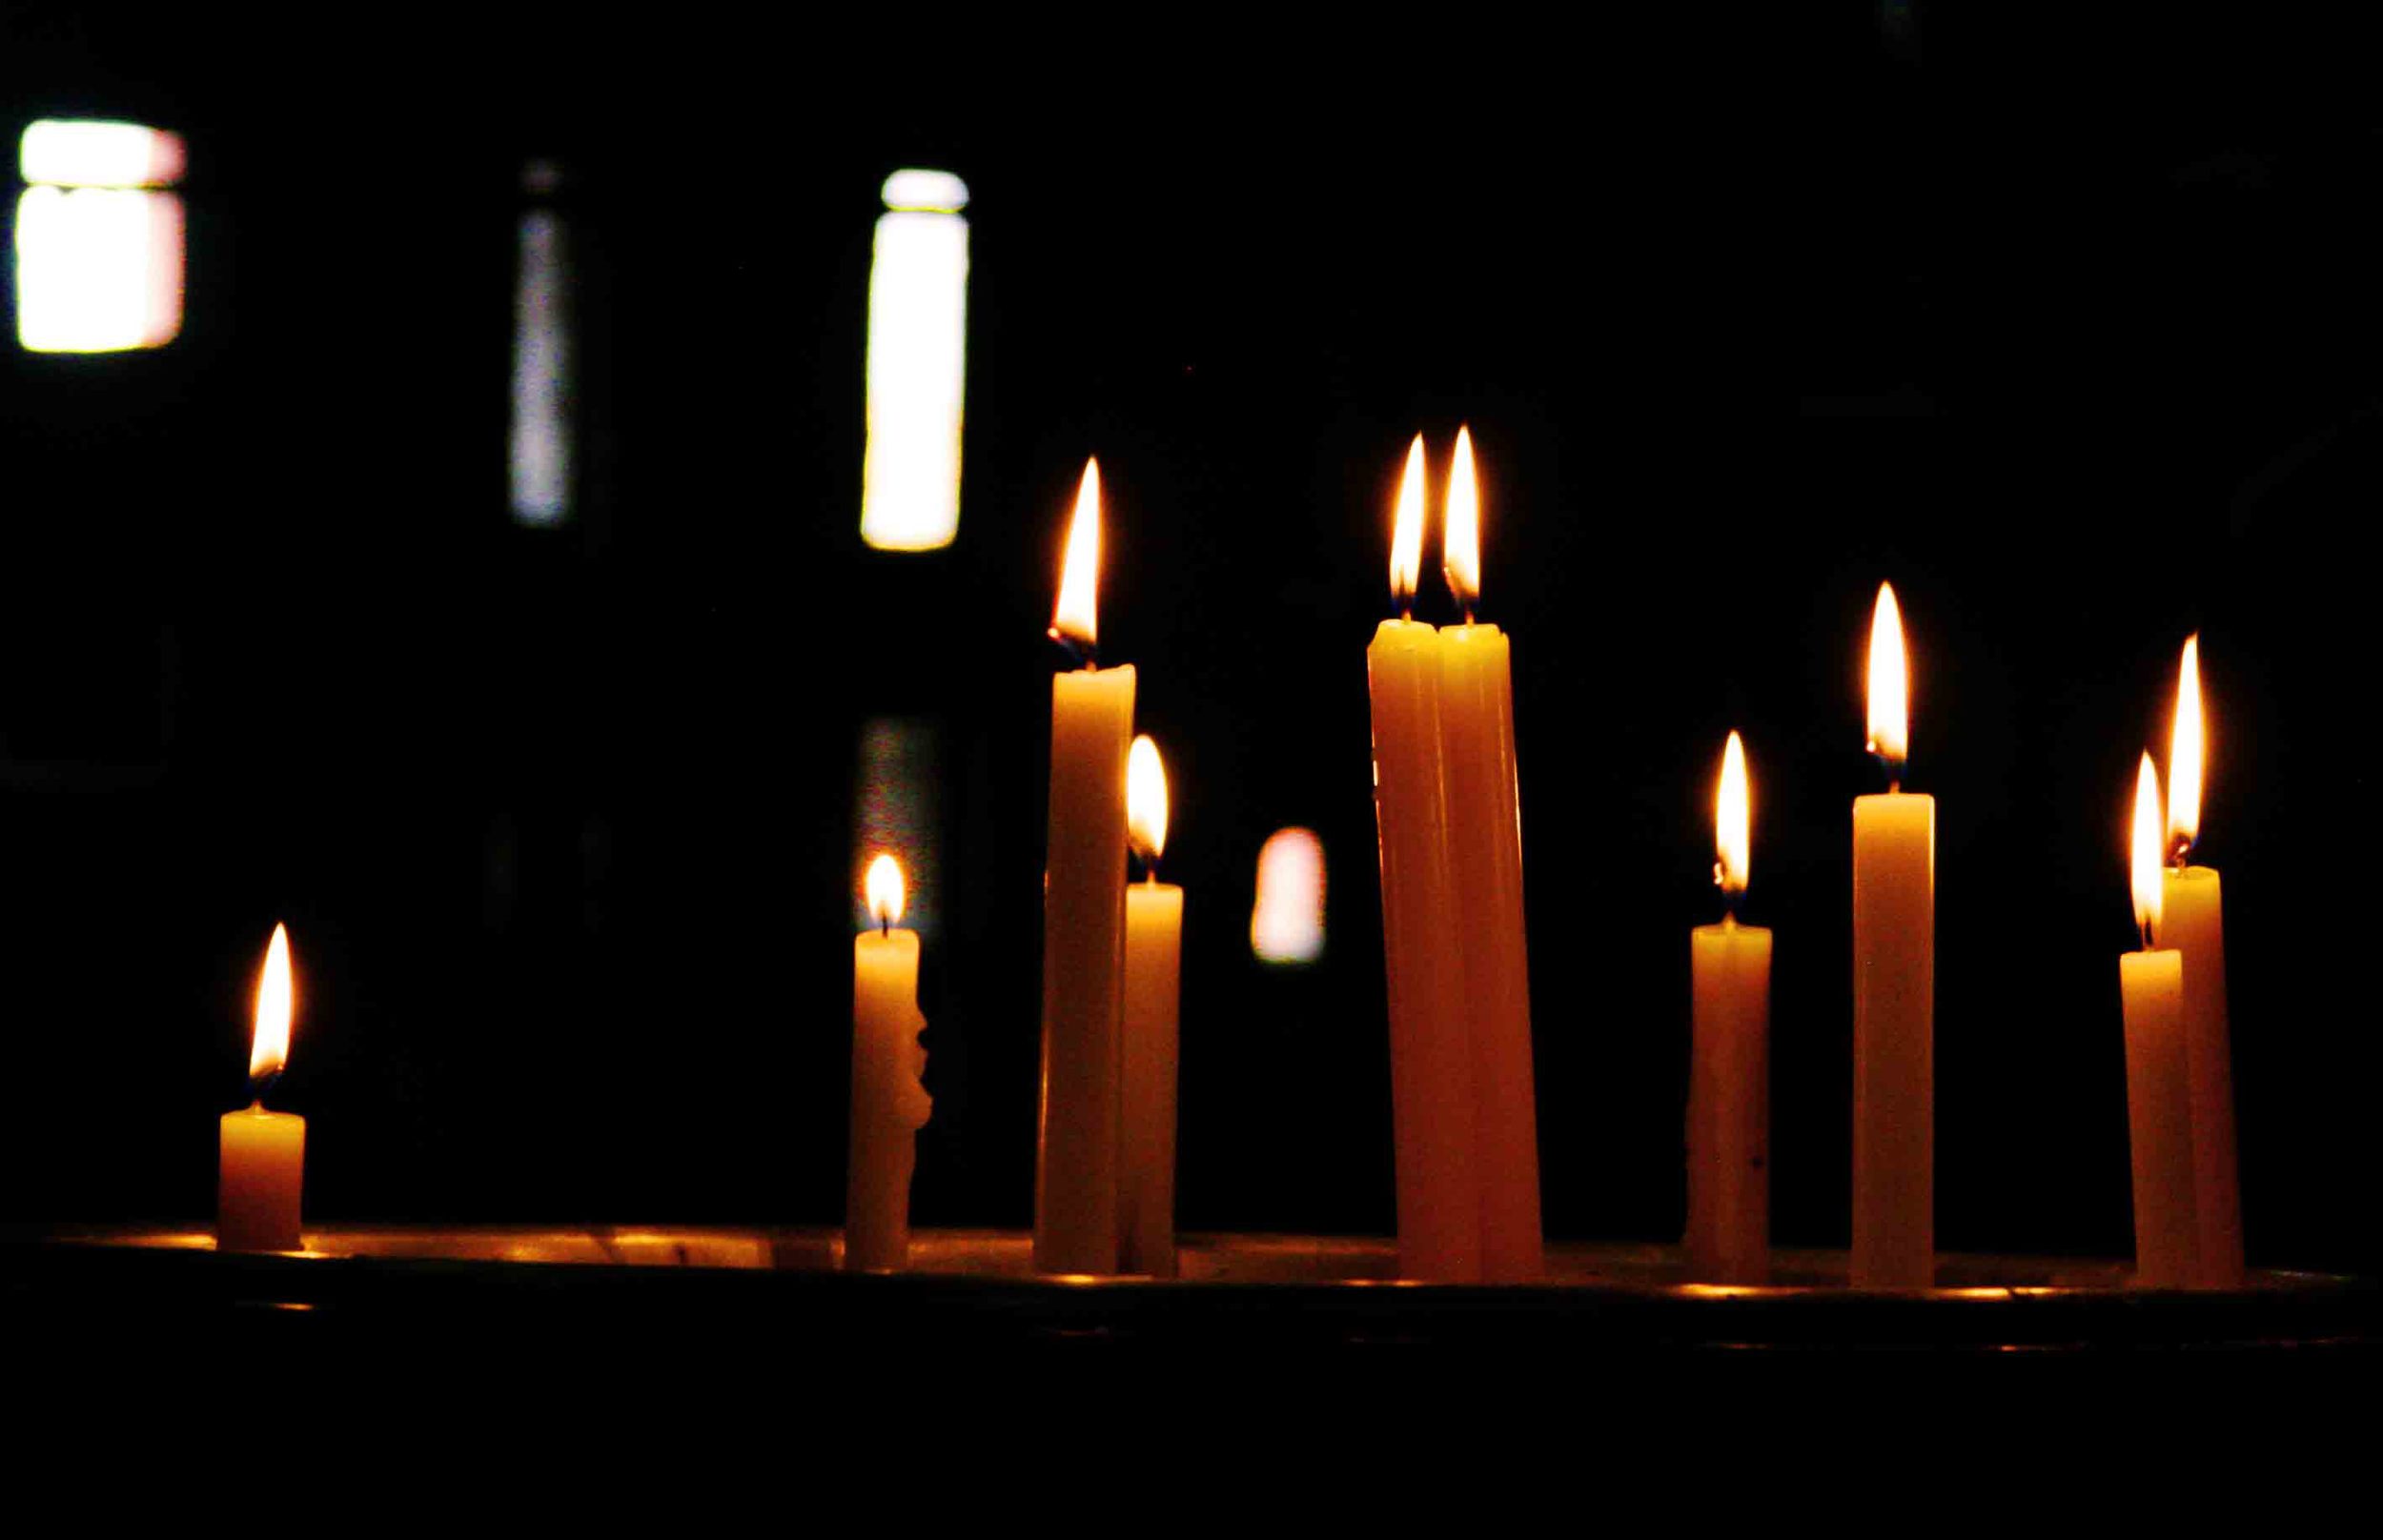 A-Candles 1A 11x17.jpg